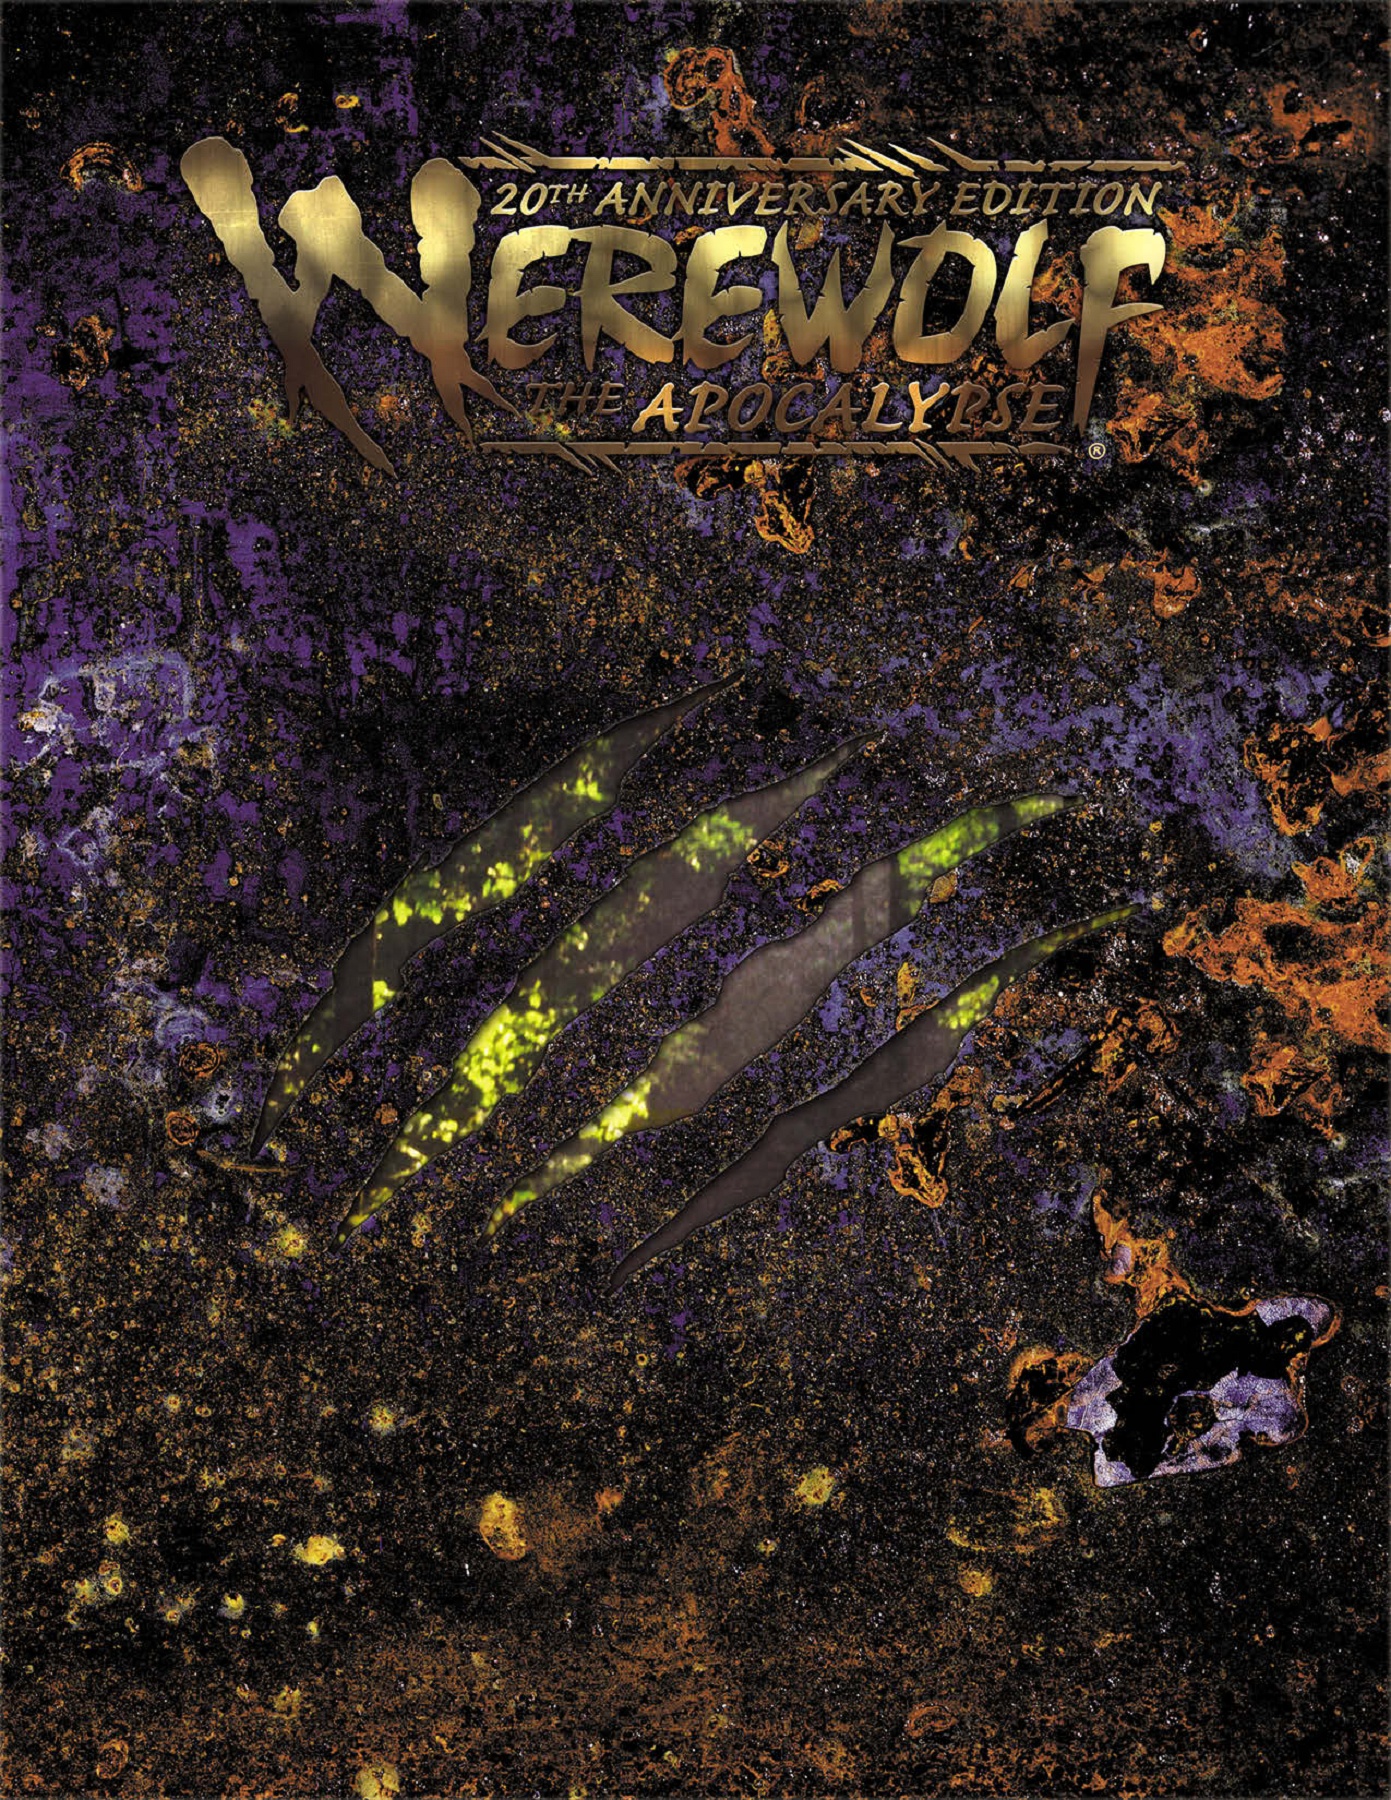 OPP10: World of Darkness Month, Week 2: Werewolf